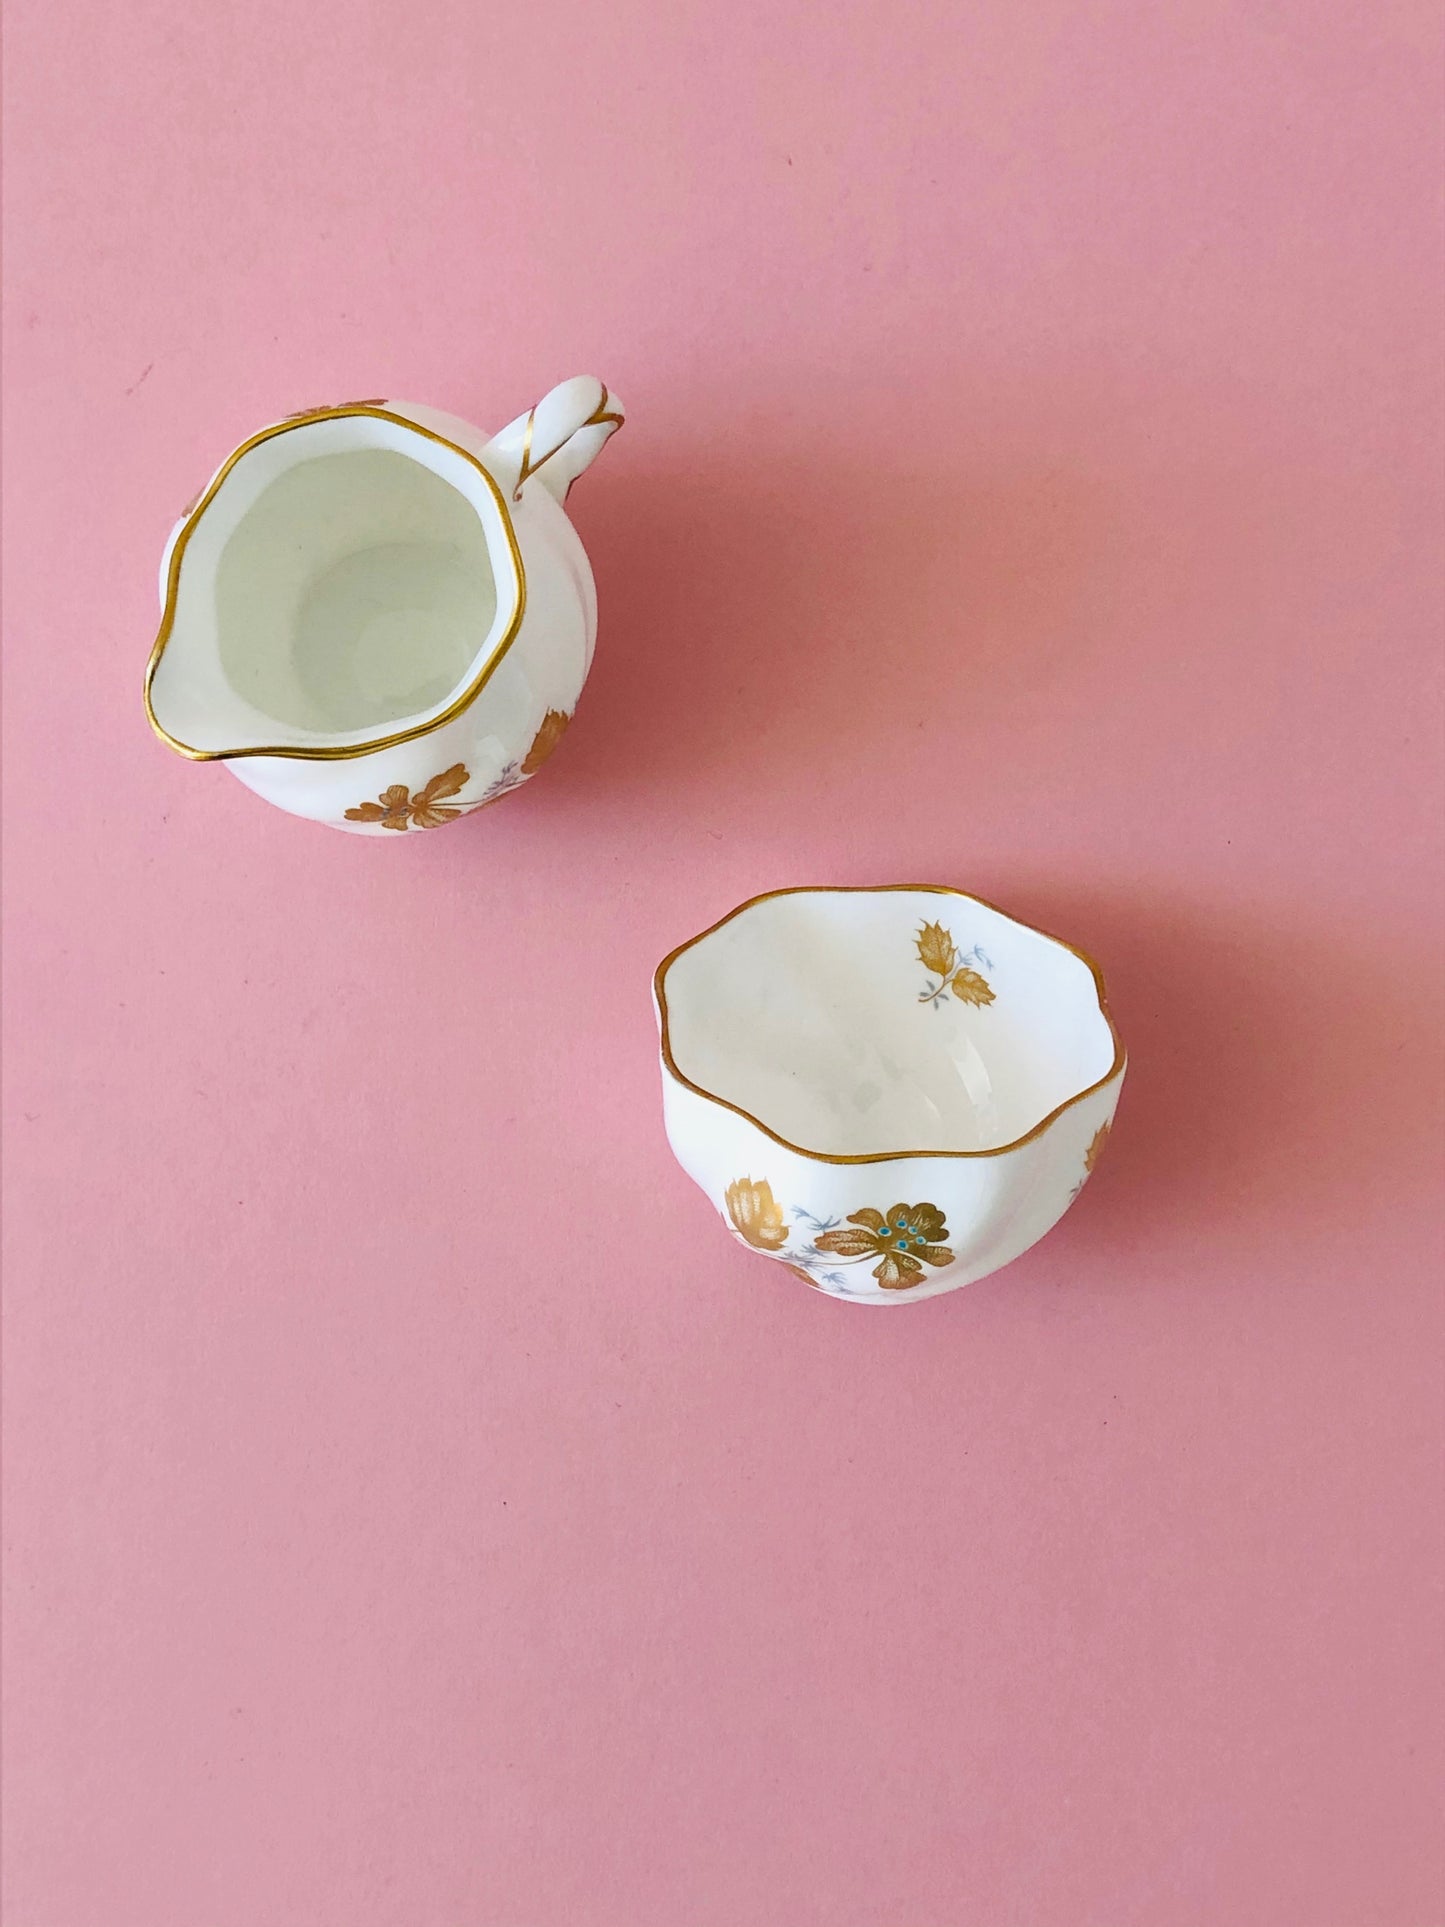 Master Dane - Ceramic Sugar and Creamer Set by Coleport